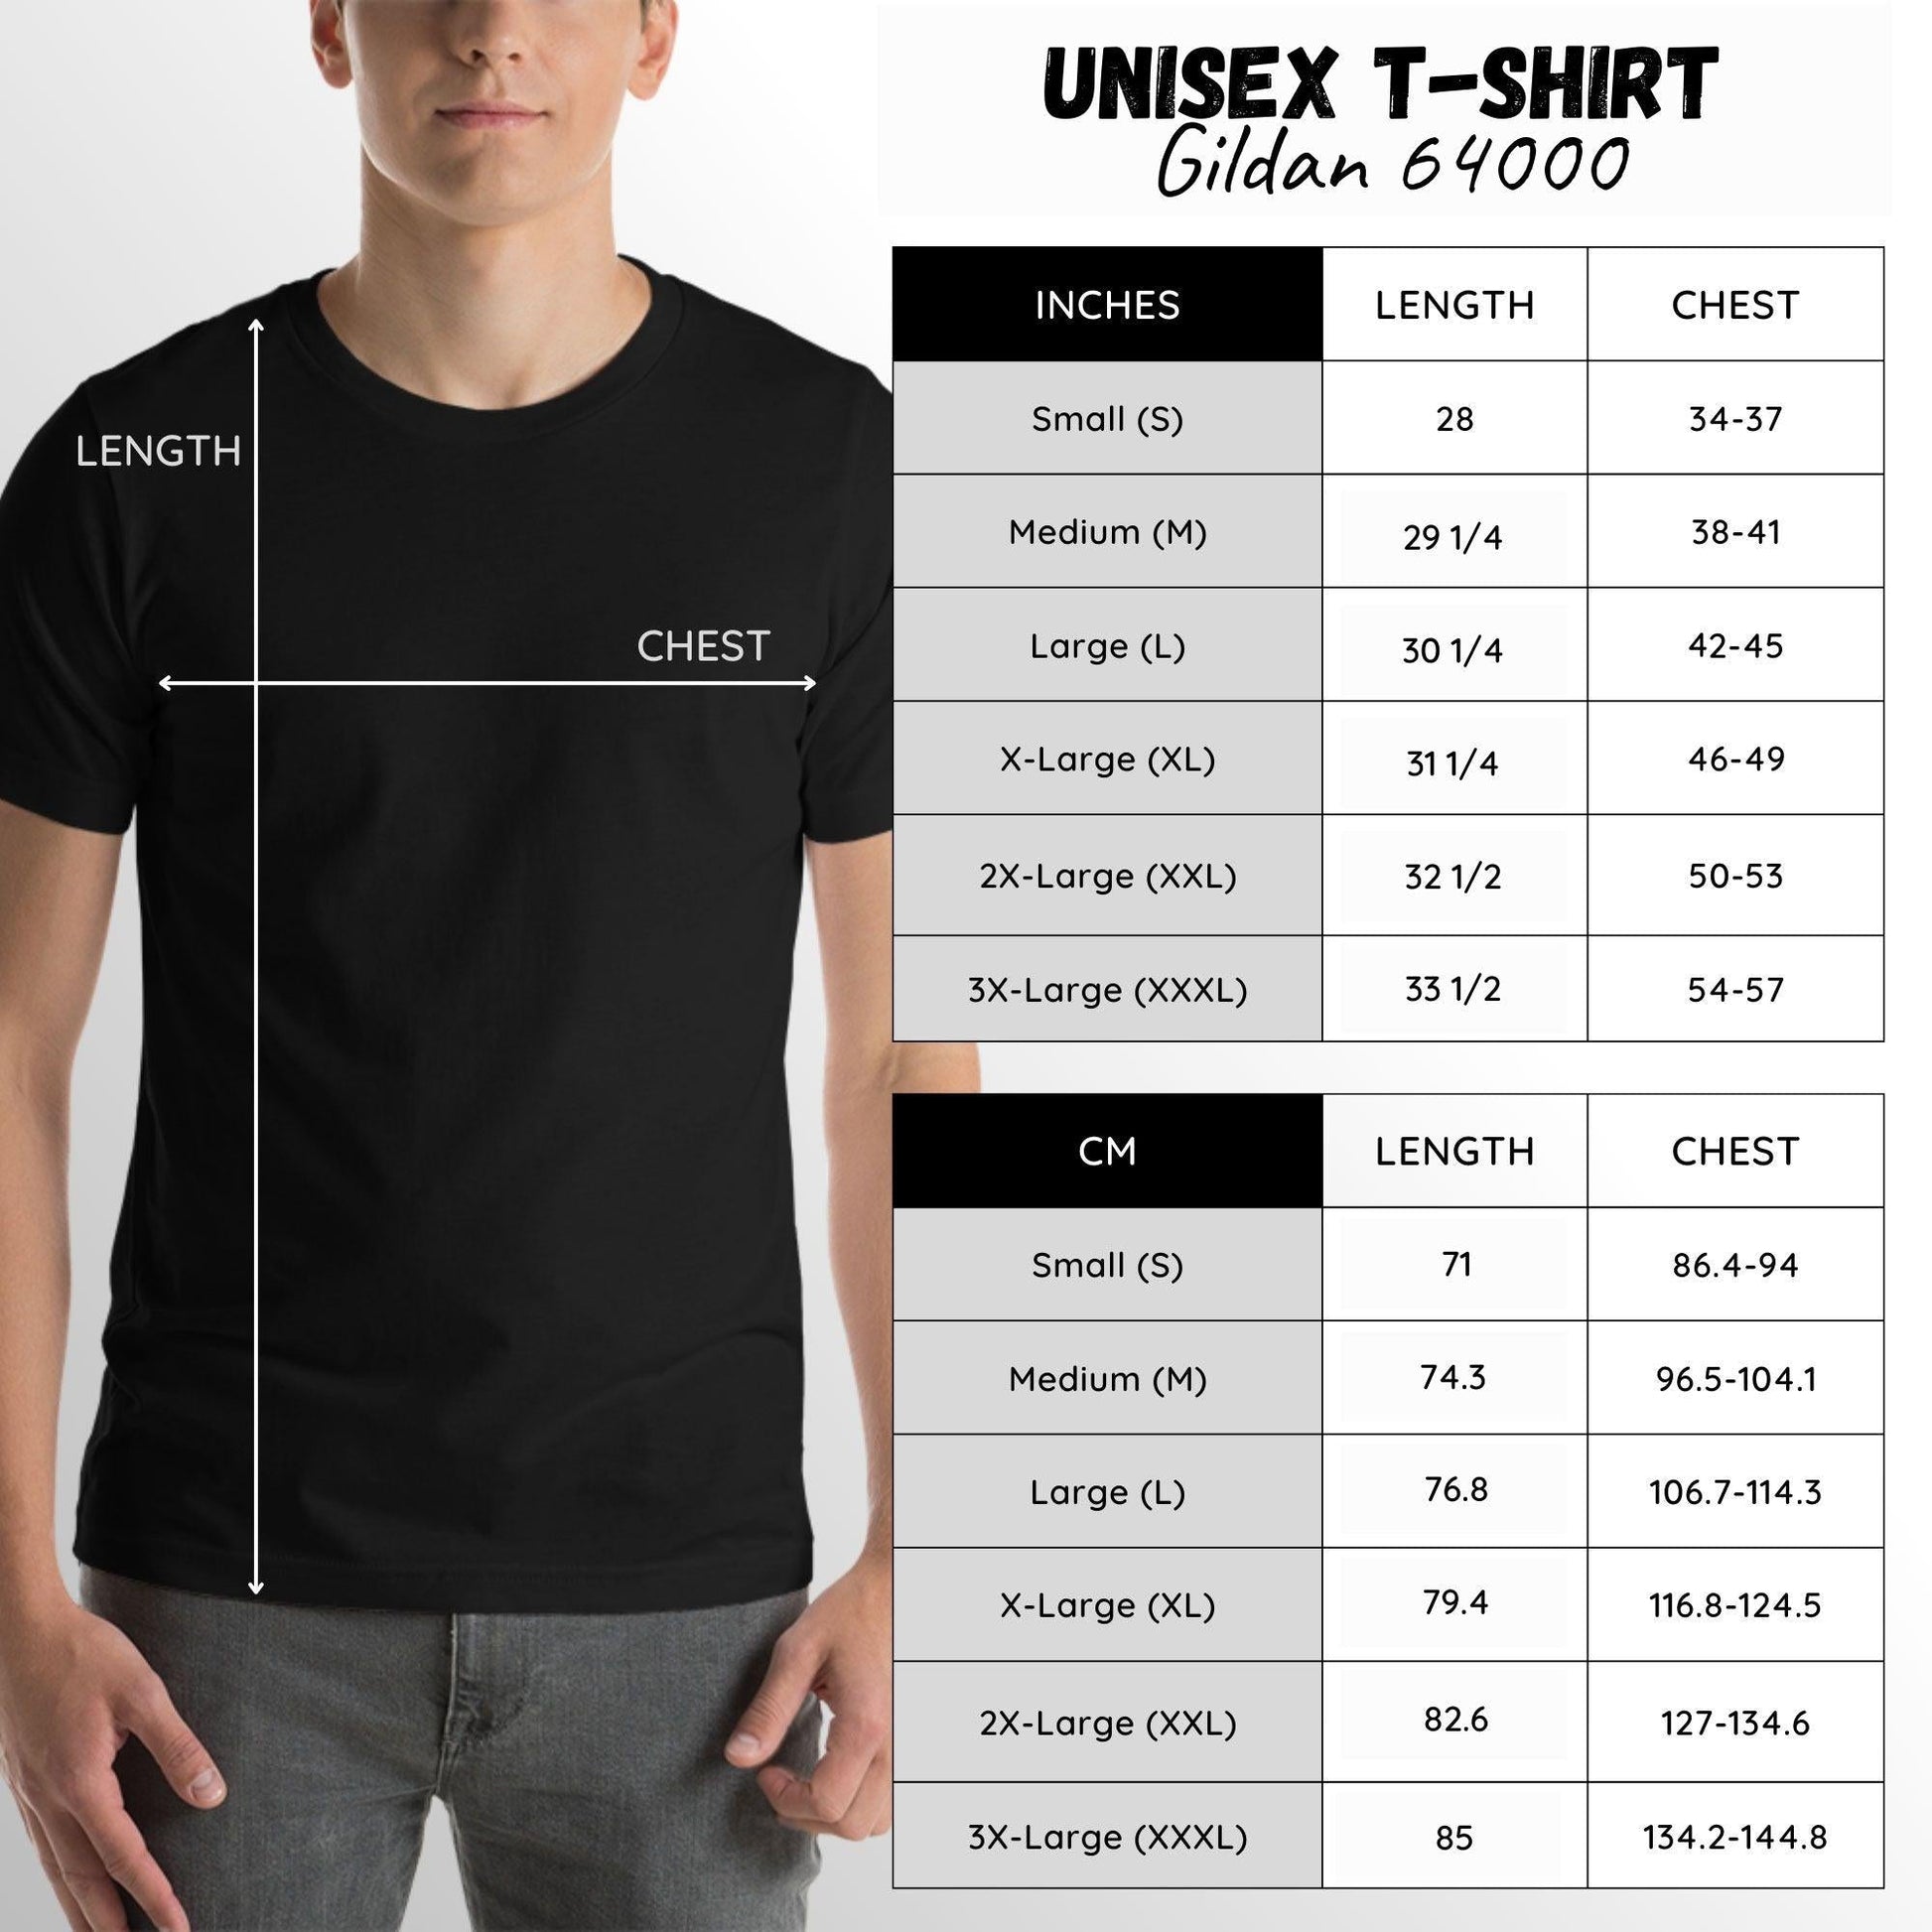 Diving Kraken T-Shirt (Unisex)